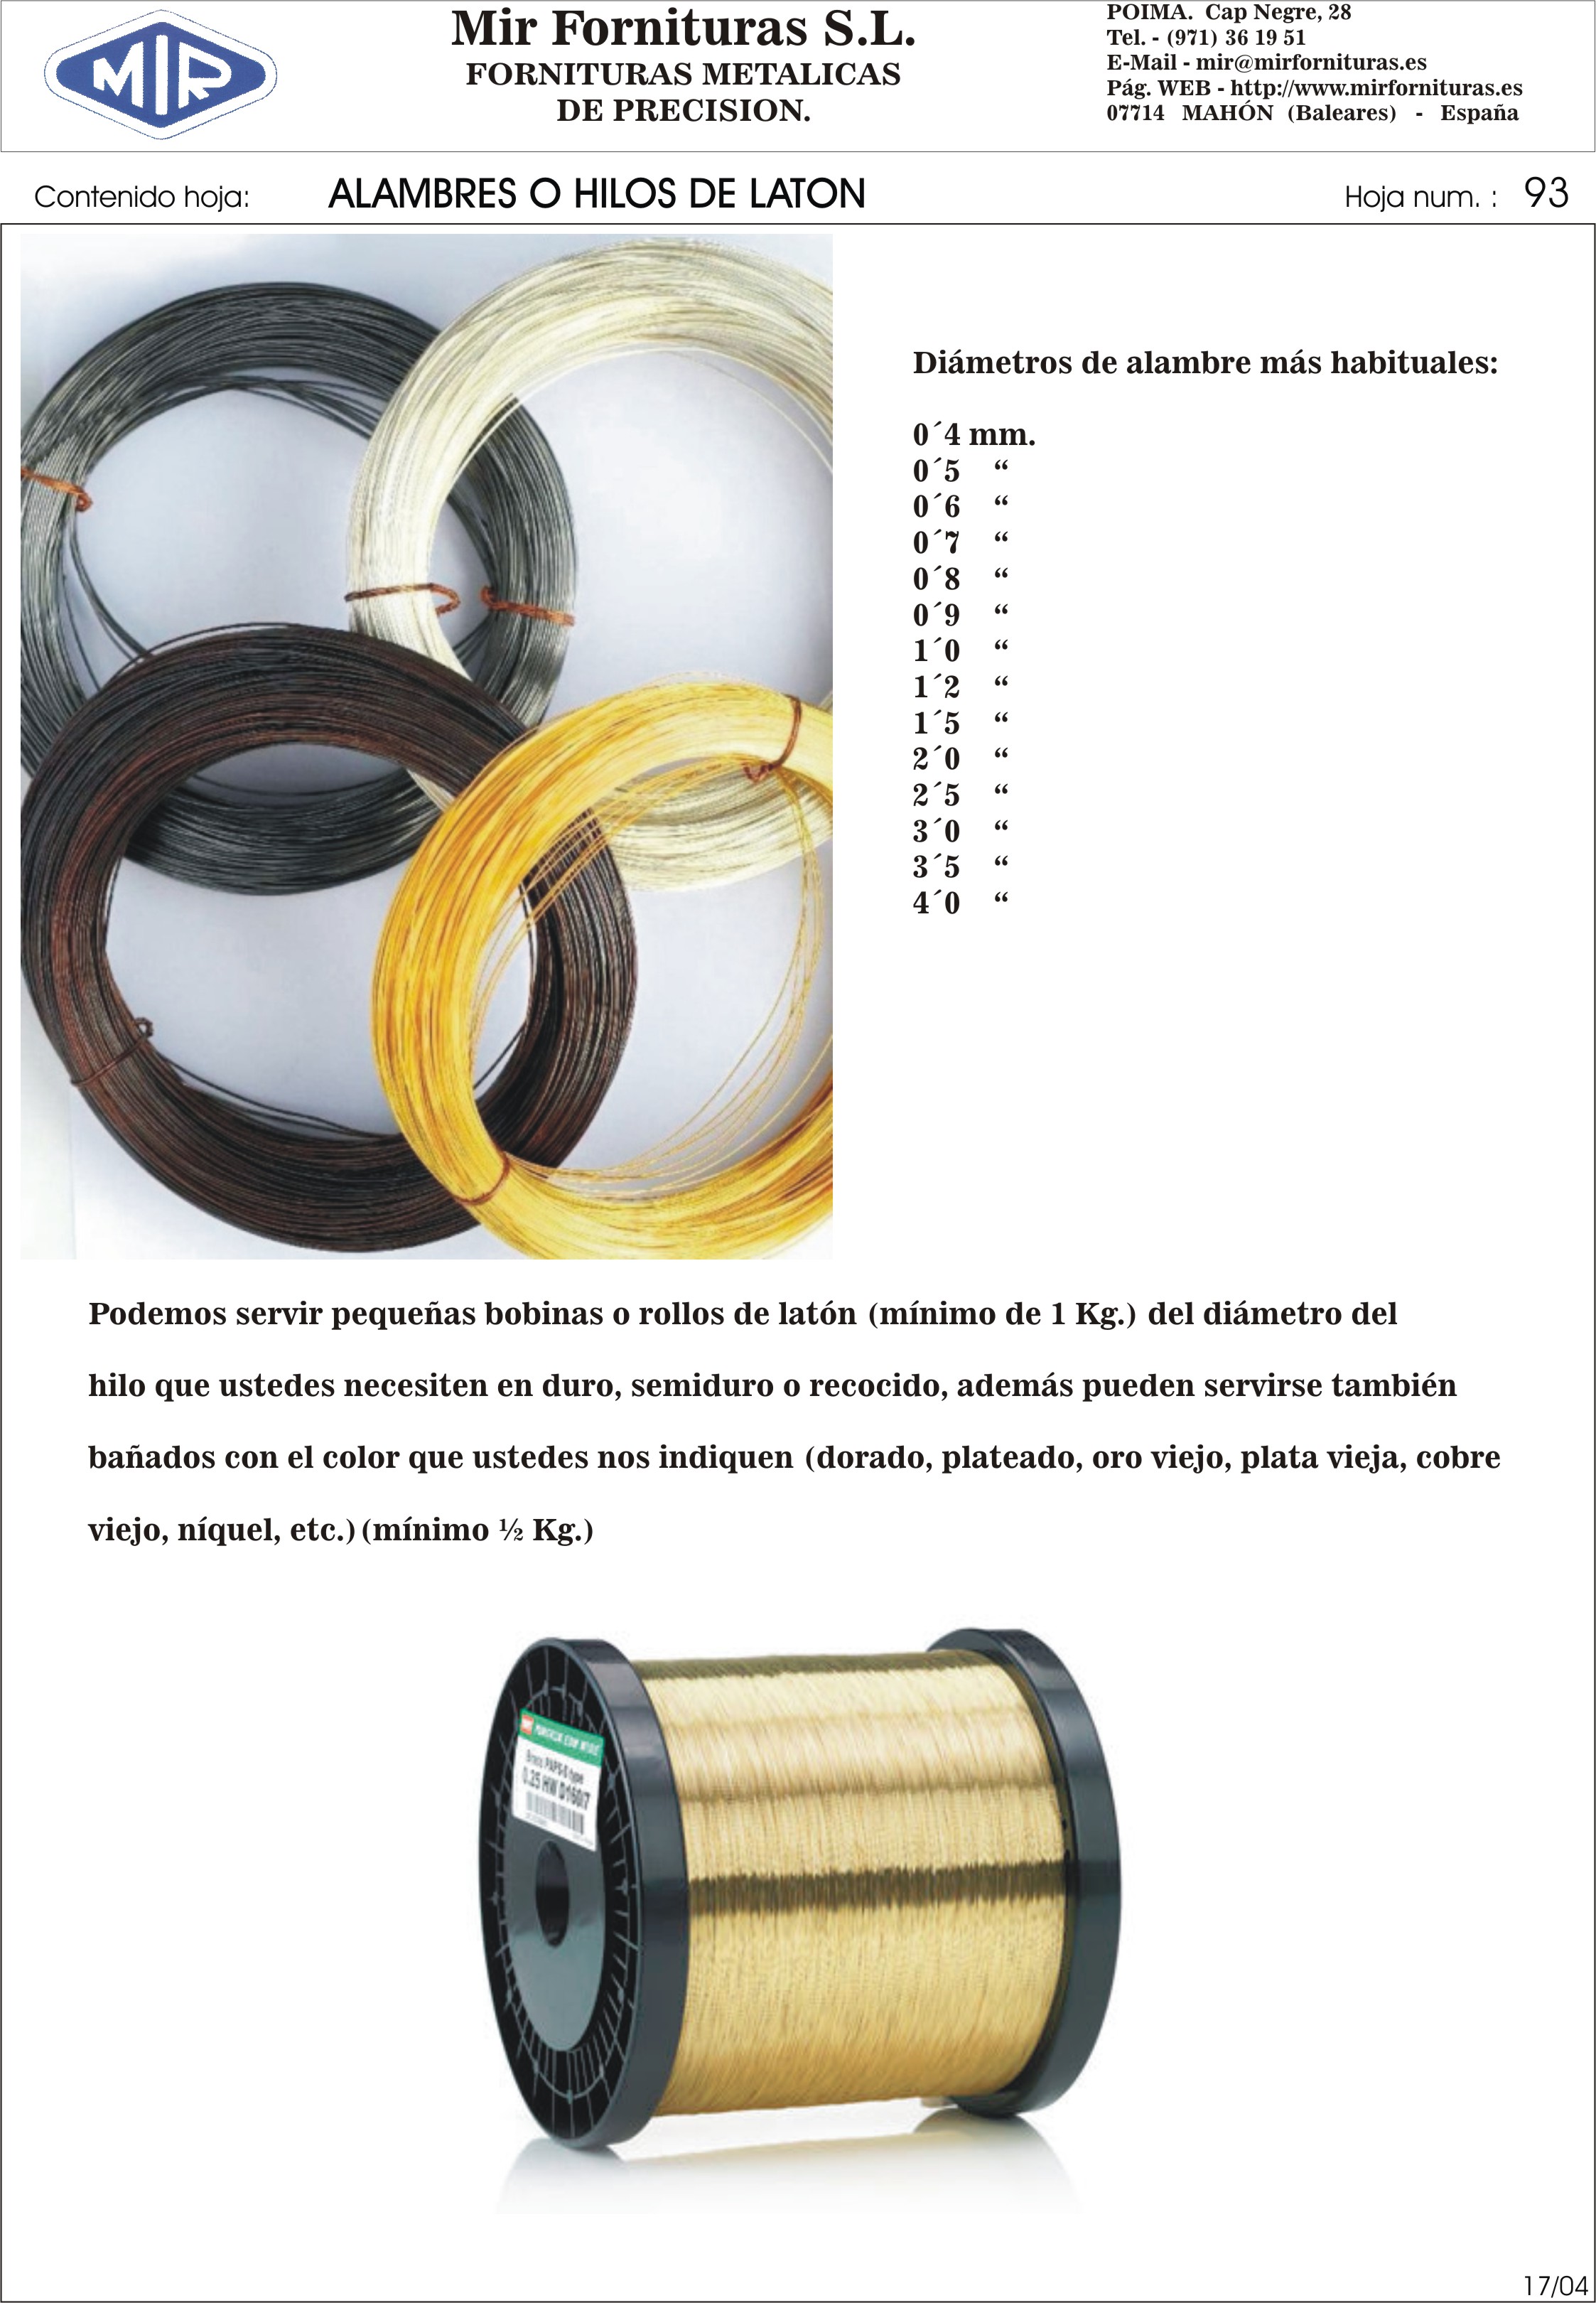 Mir Fornituras, S. L. Brass wires